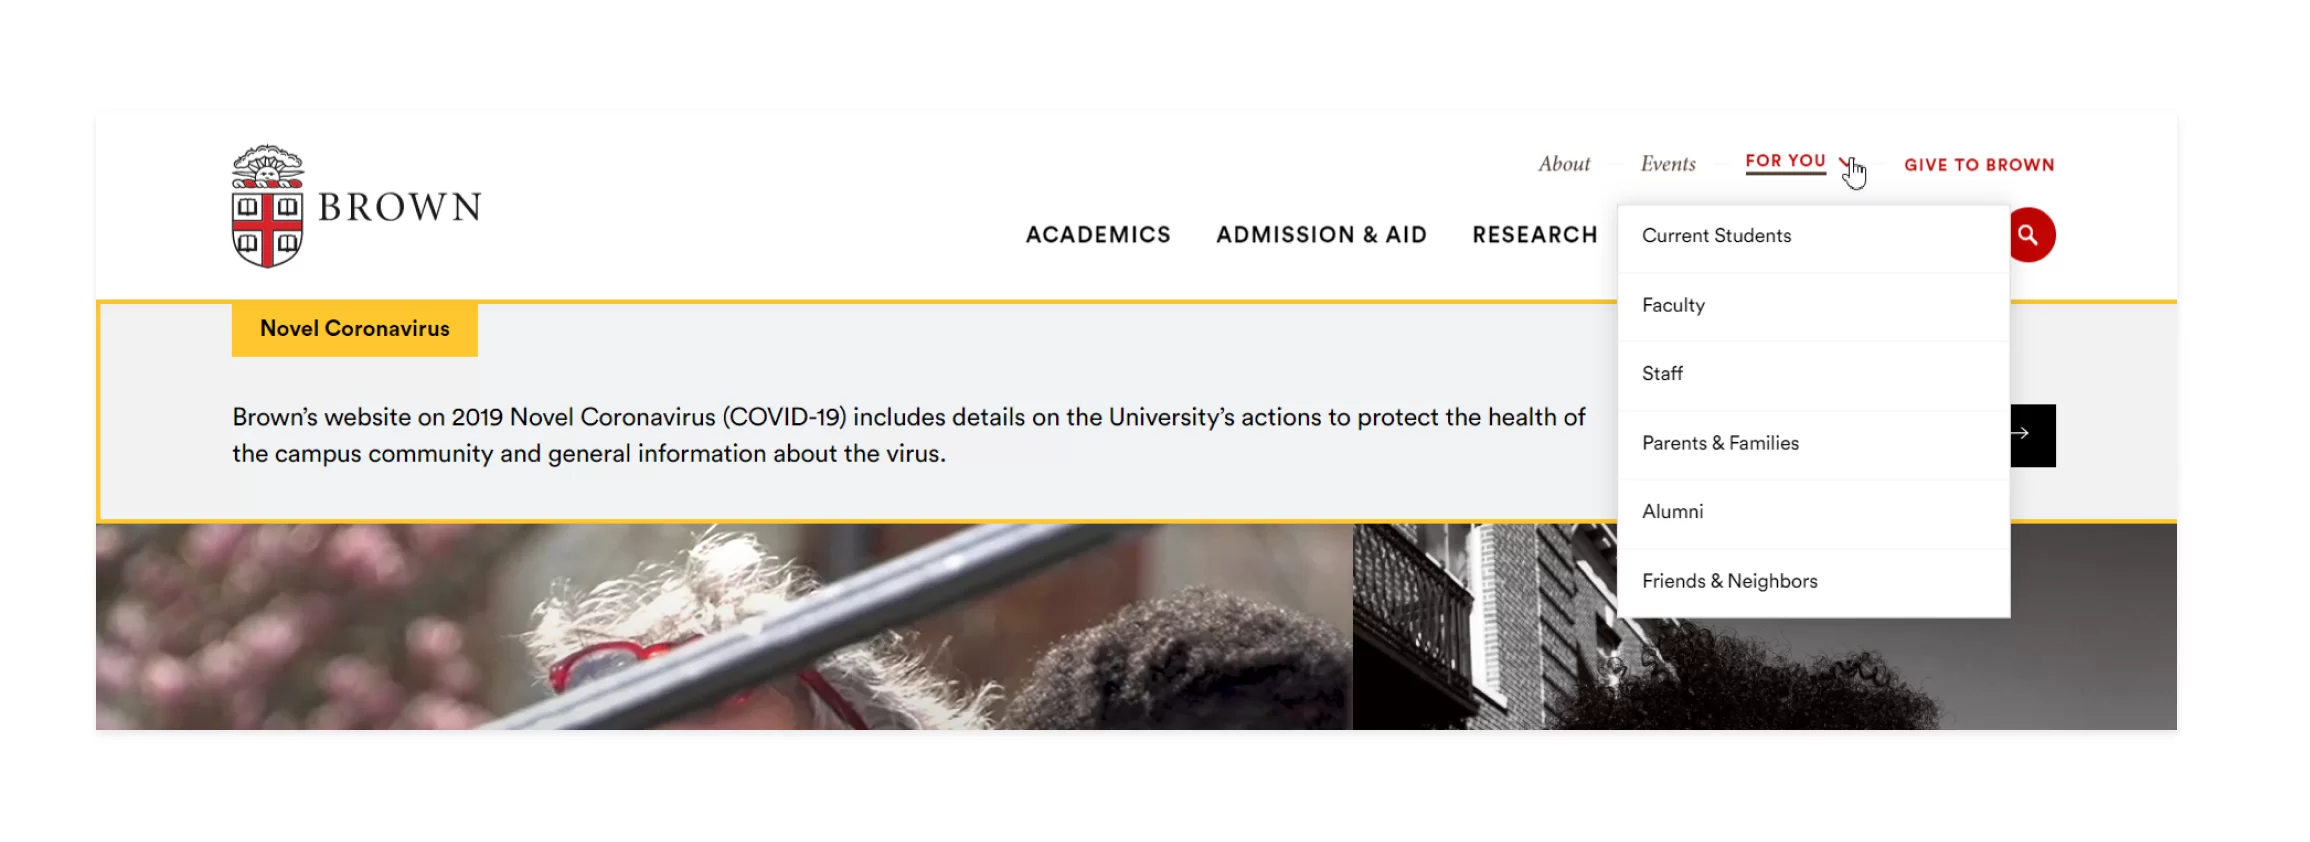 Brown University website